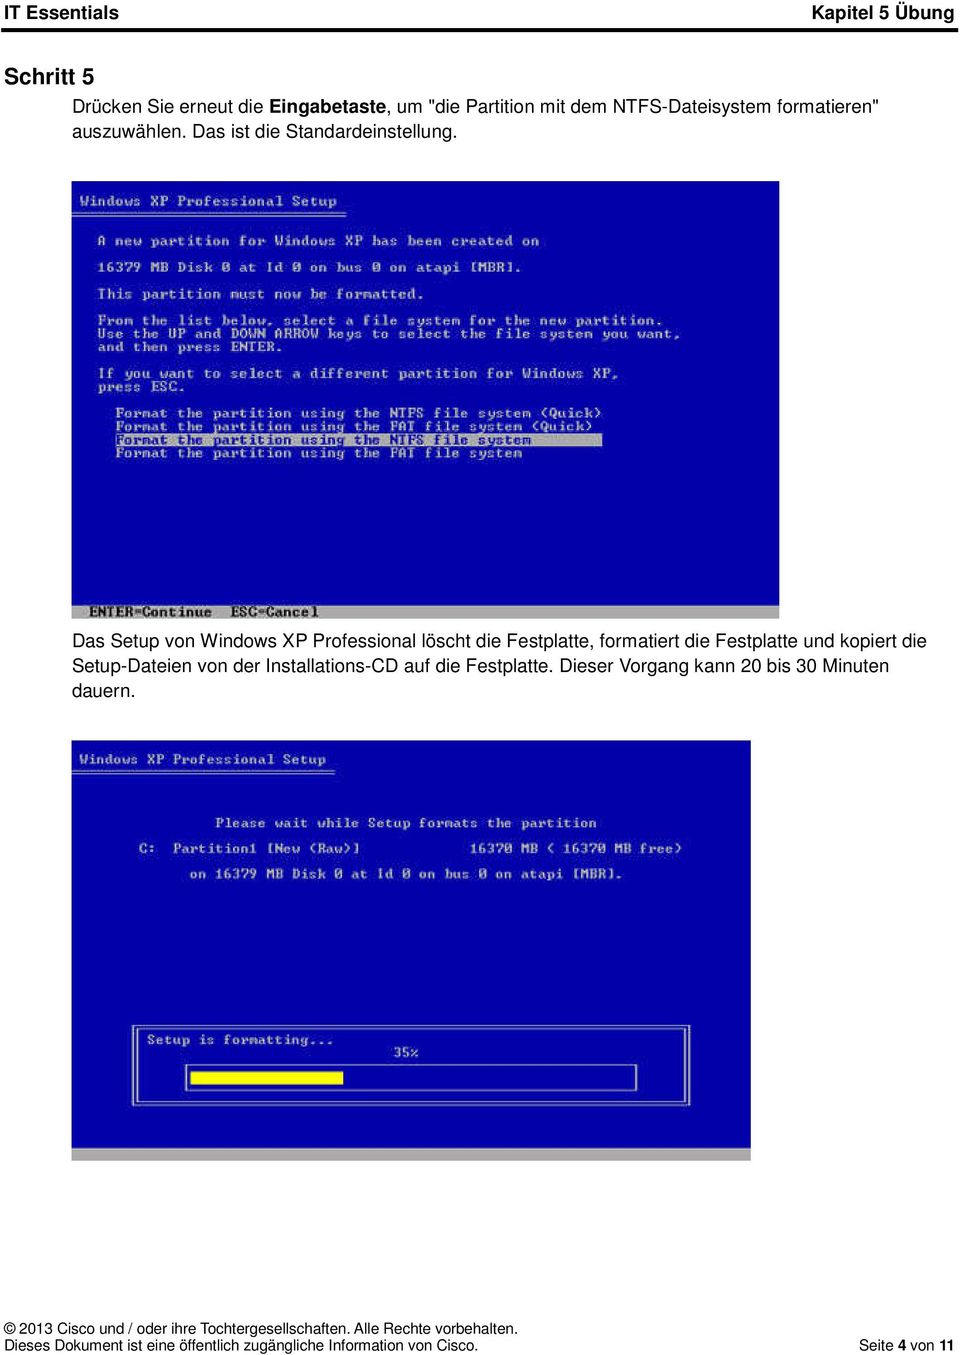 Das Setup von Windows XP Professional löscht die Festplatte, formatiert die Festplatte und kopiert die